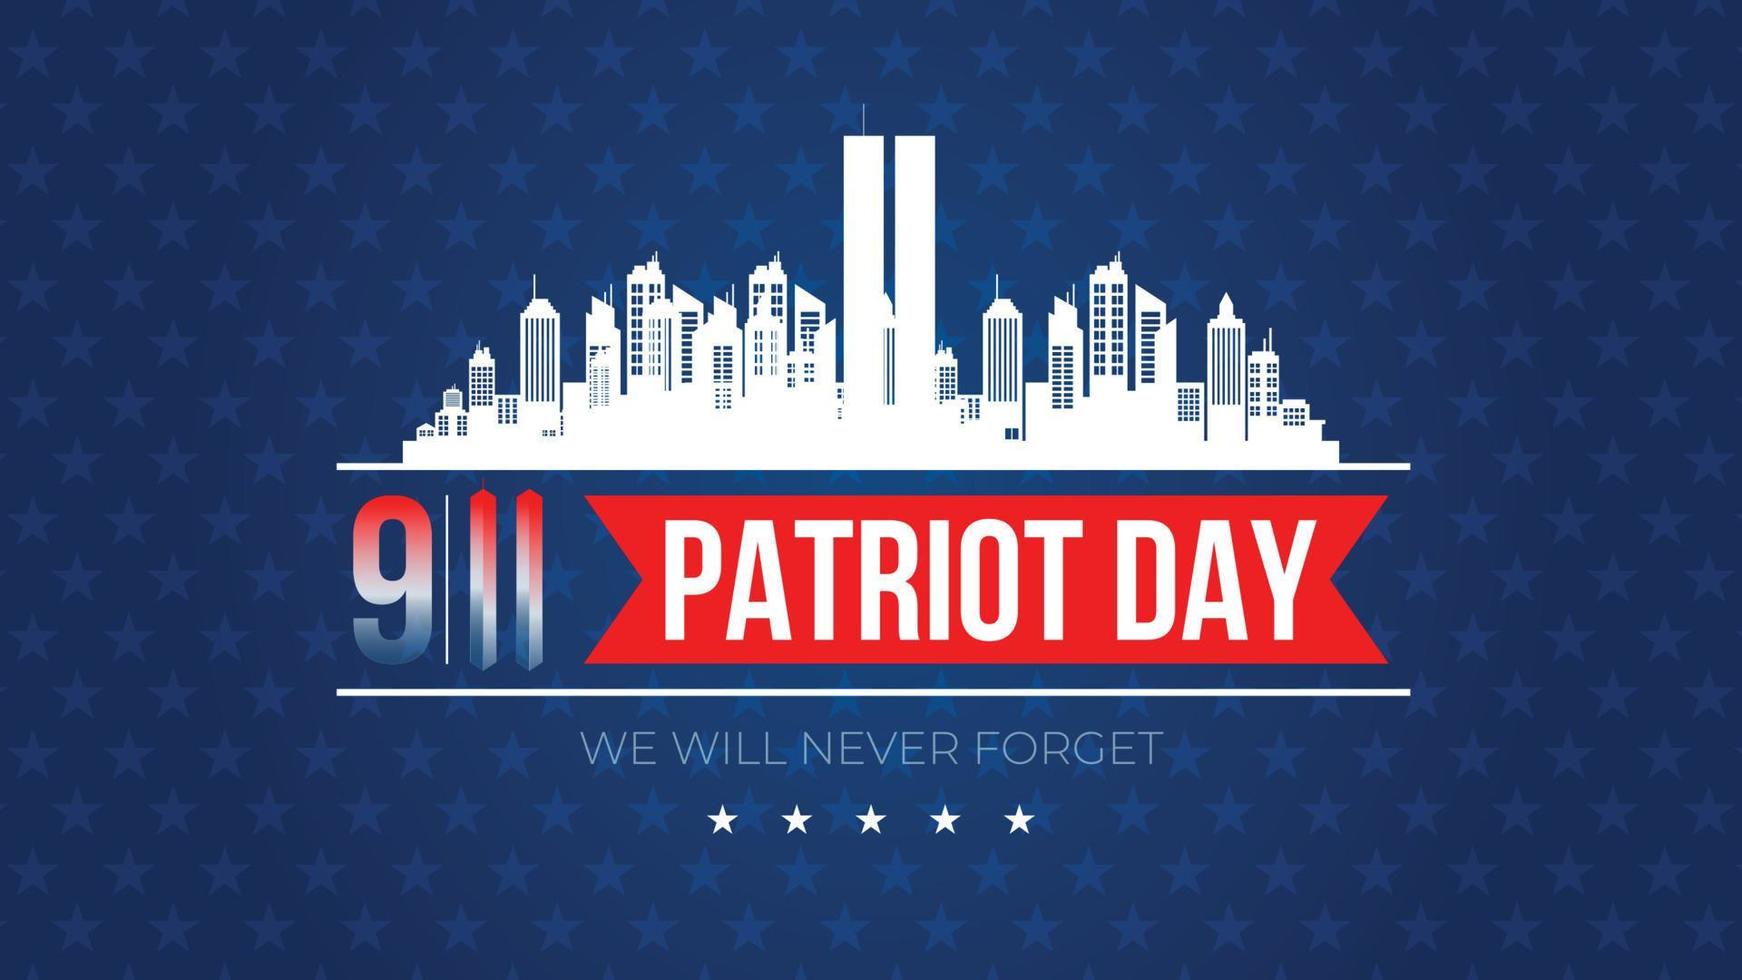 tours jumelles à new york city skyline. affiche vectorielle du 11 septembre 2001. fête des patriotes, 11 septembre, nous n'oublierons jamais vecteur